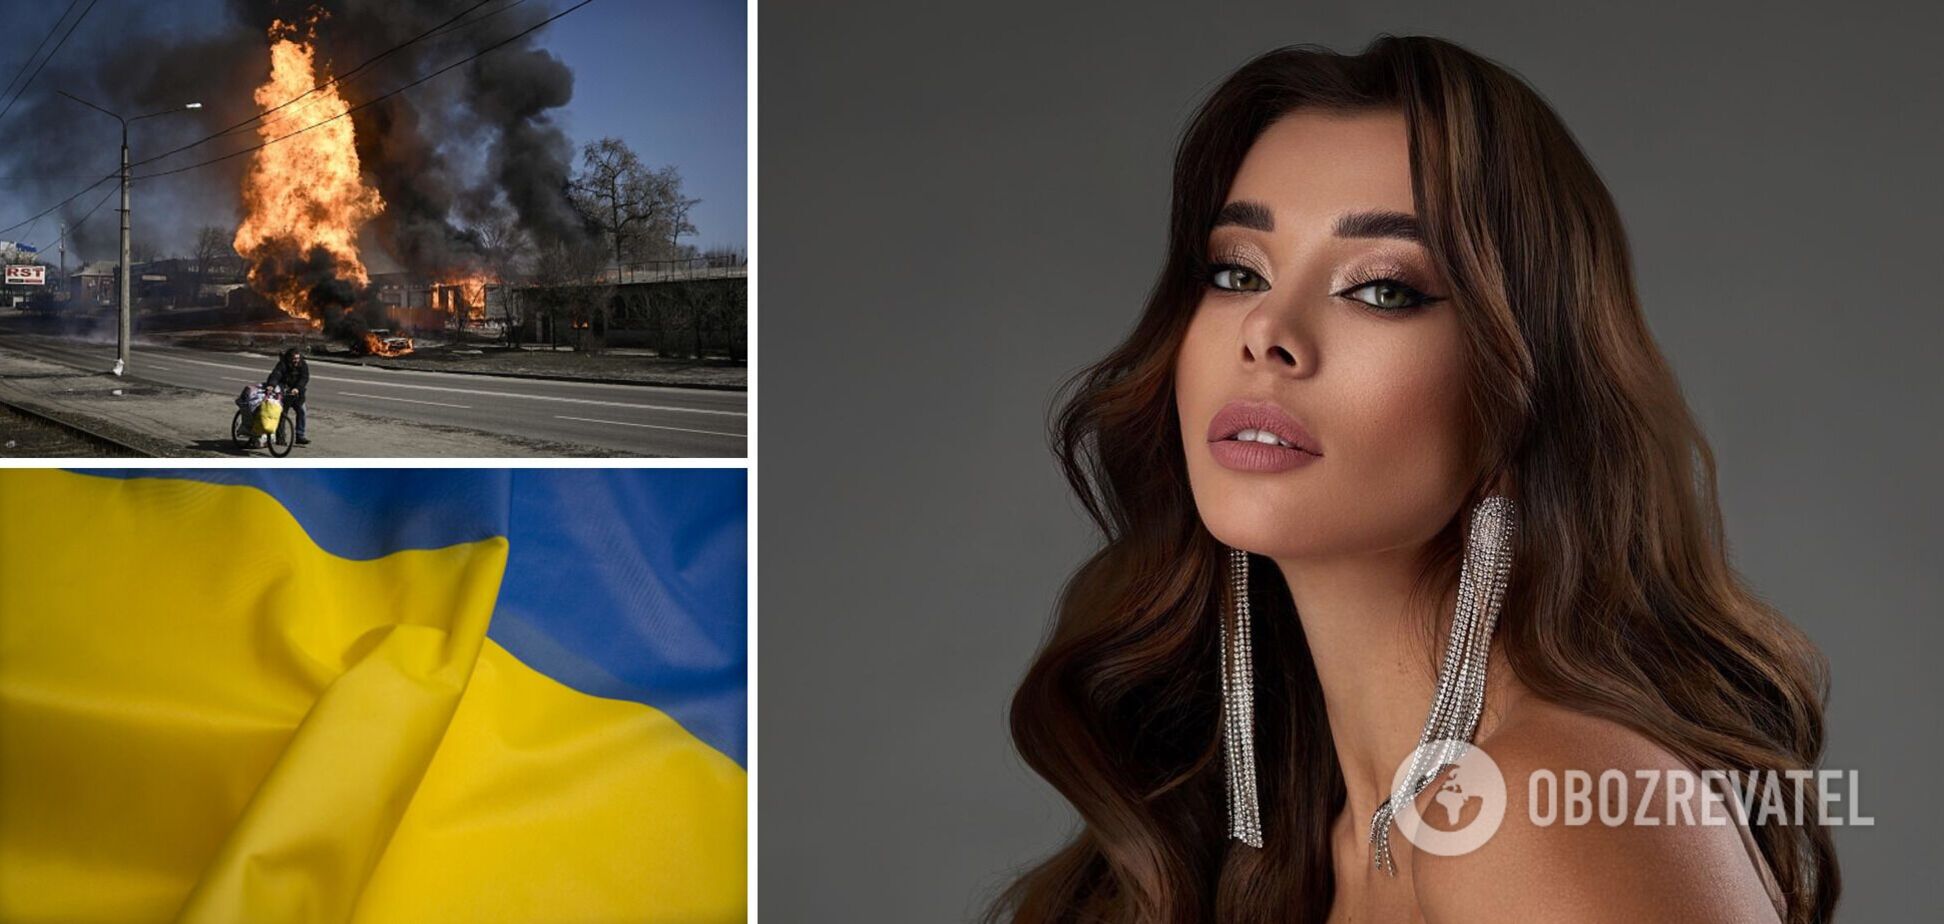 'Міс Україна Всесвіт' Анна Неплях розійшлася зі своїм хлопцем через різні погляди на війну